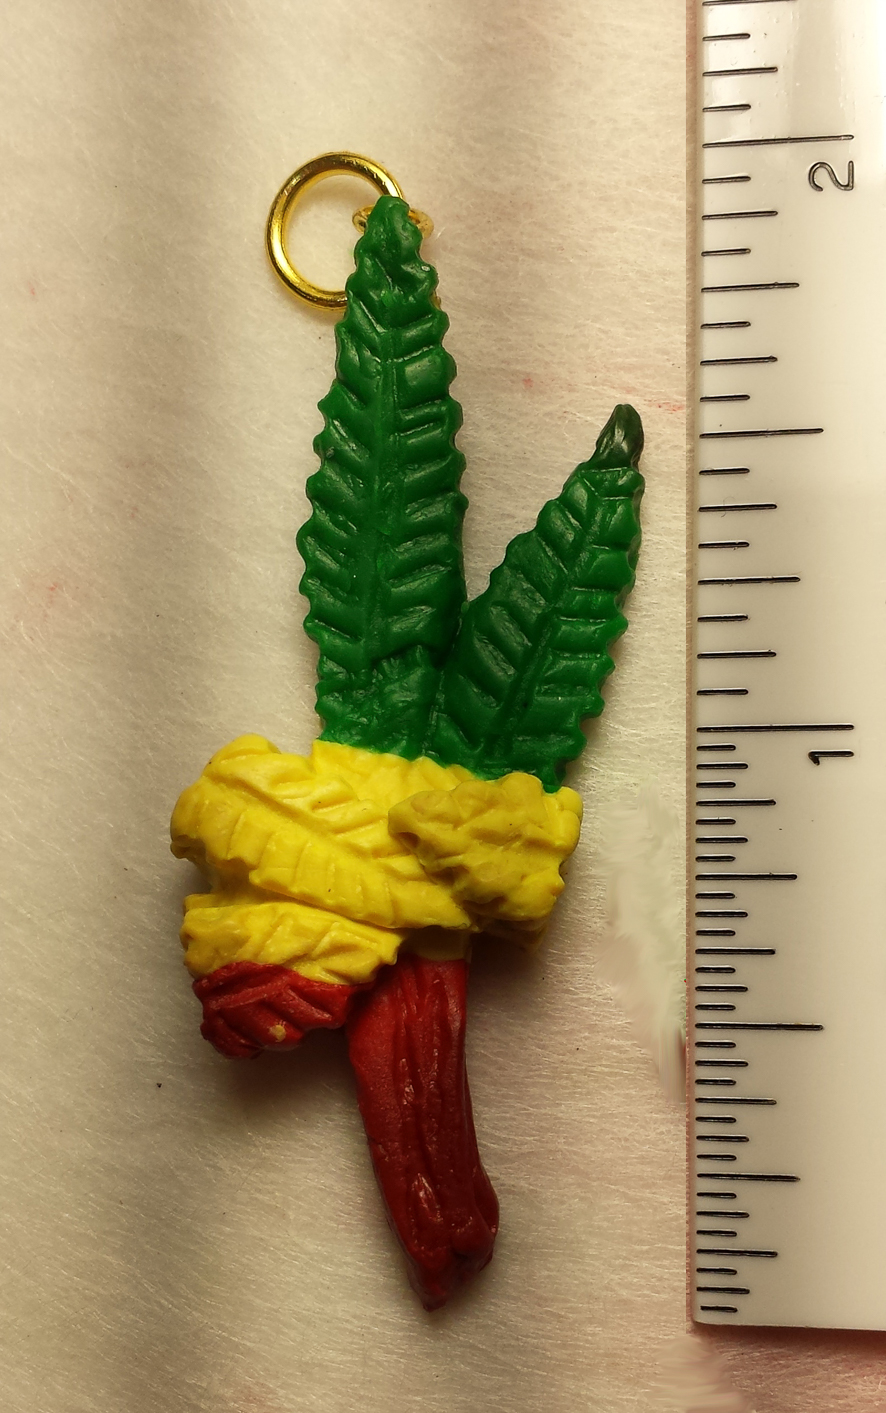 two inch i rastafari tricolor